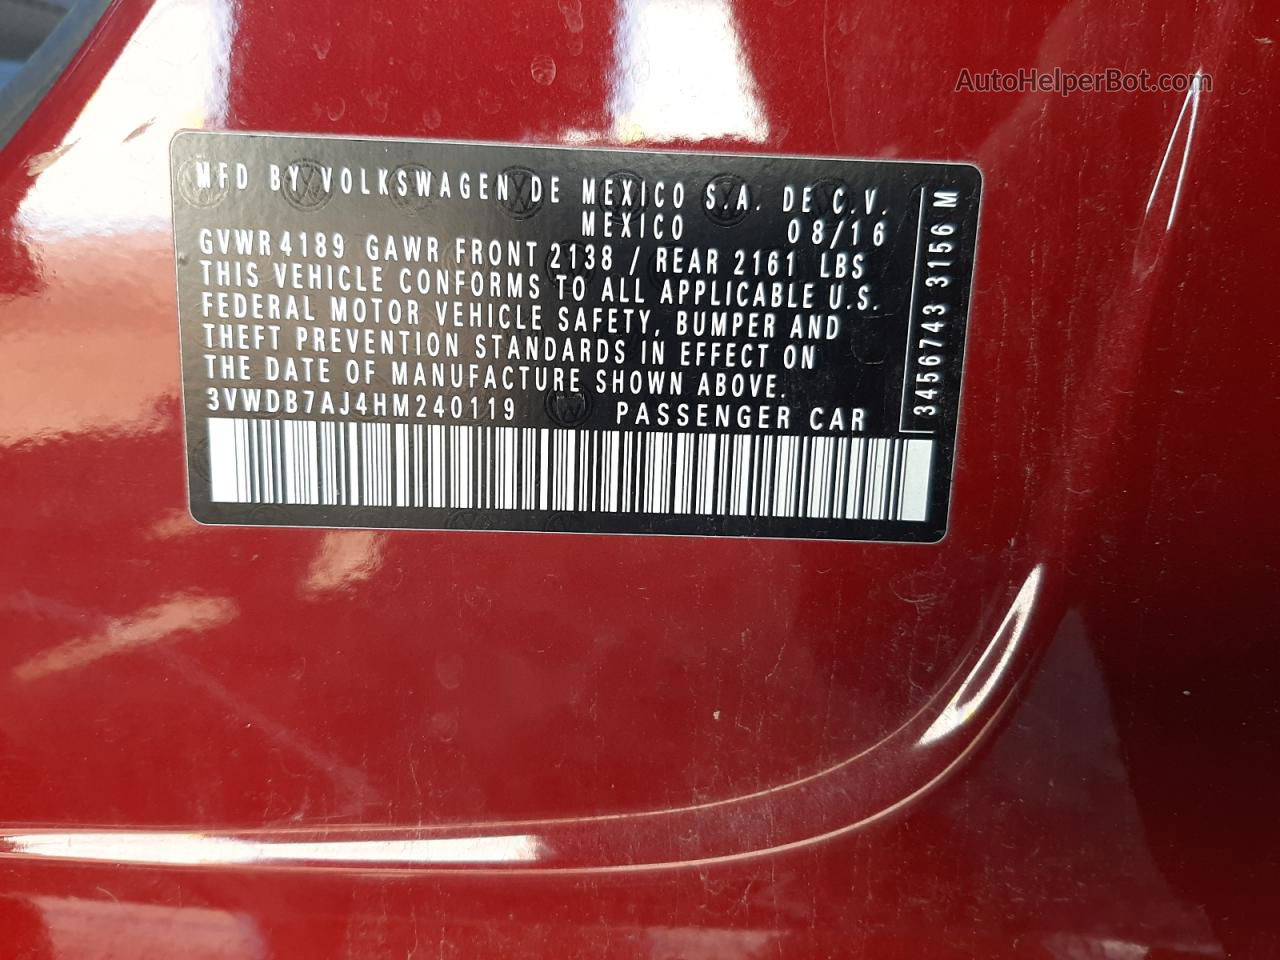 2017 Volkswagen Jetta Se Red vin: 3VWDB7AJ4HM240119